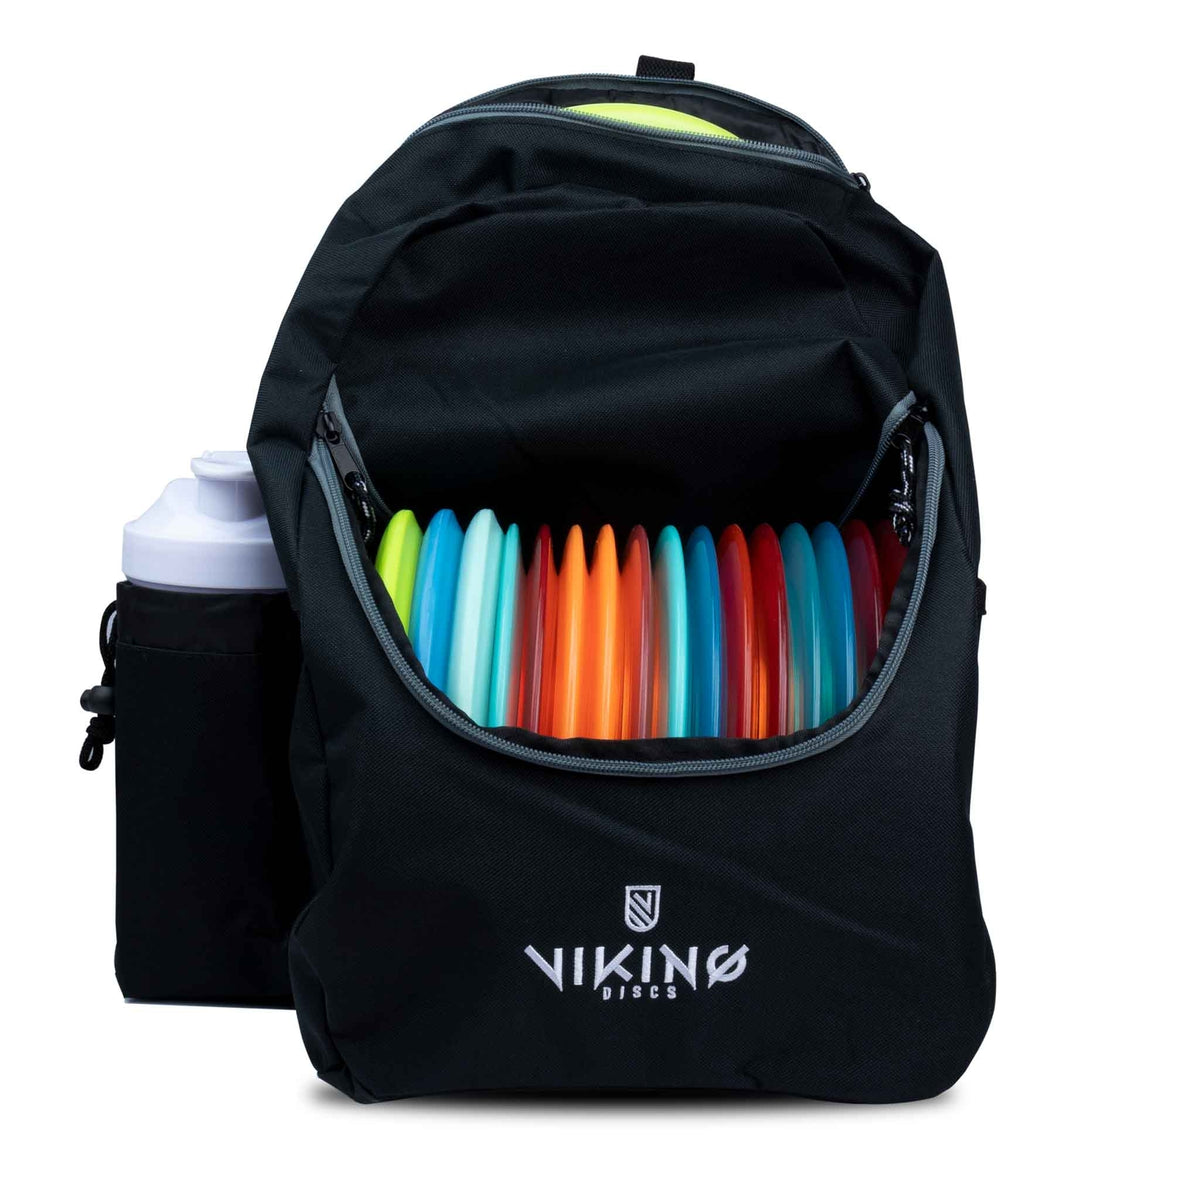 Sacs de disc golf, sacs à dos - Accessoires de disc golf et plus encor -  Nordic ProStore